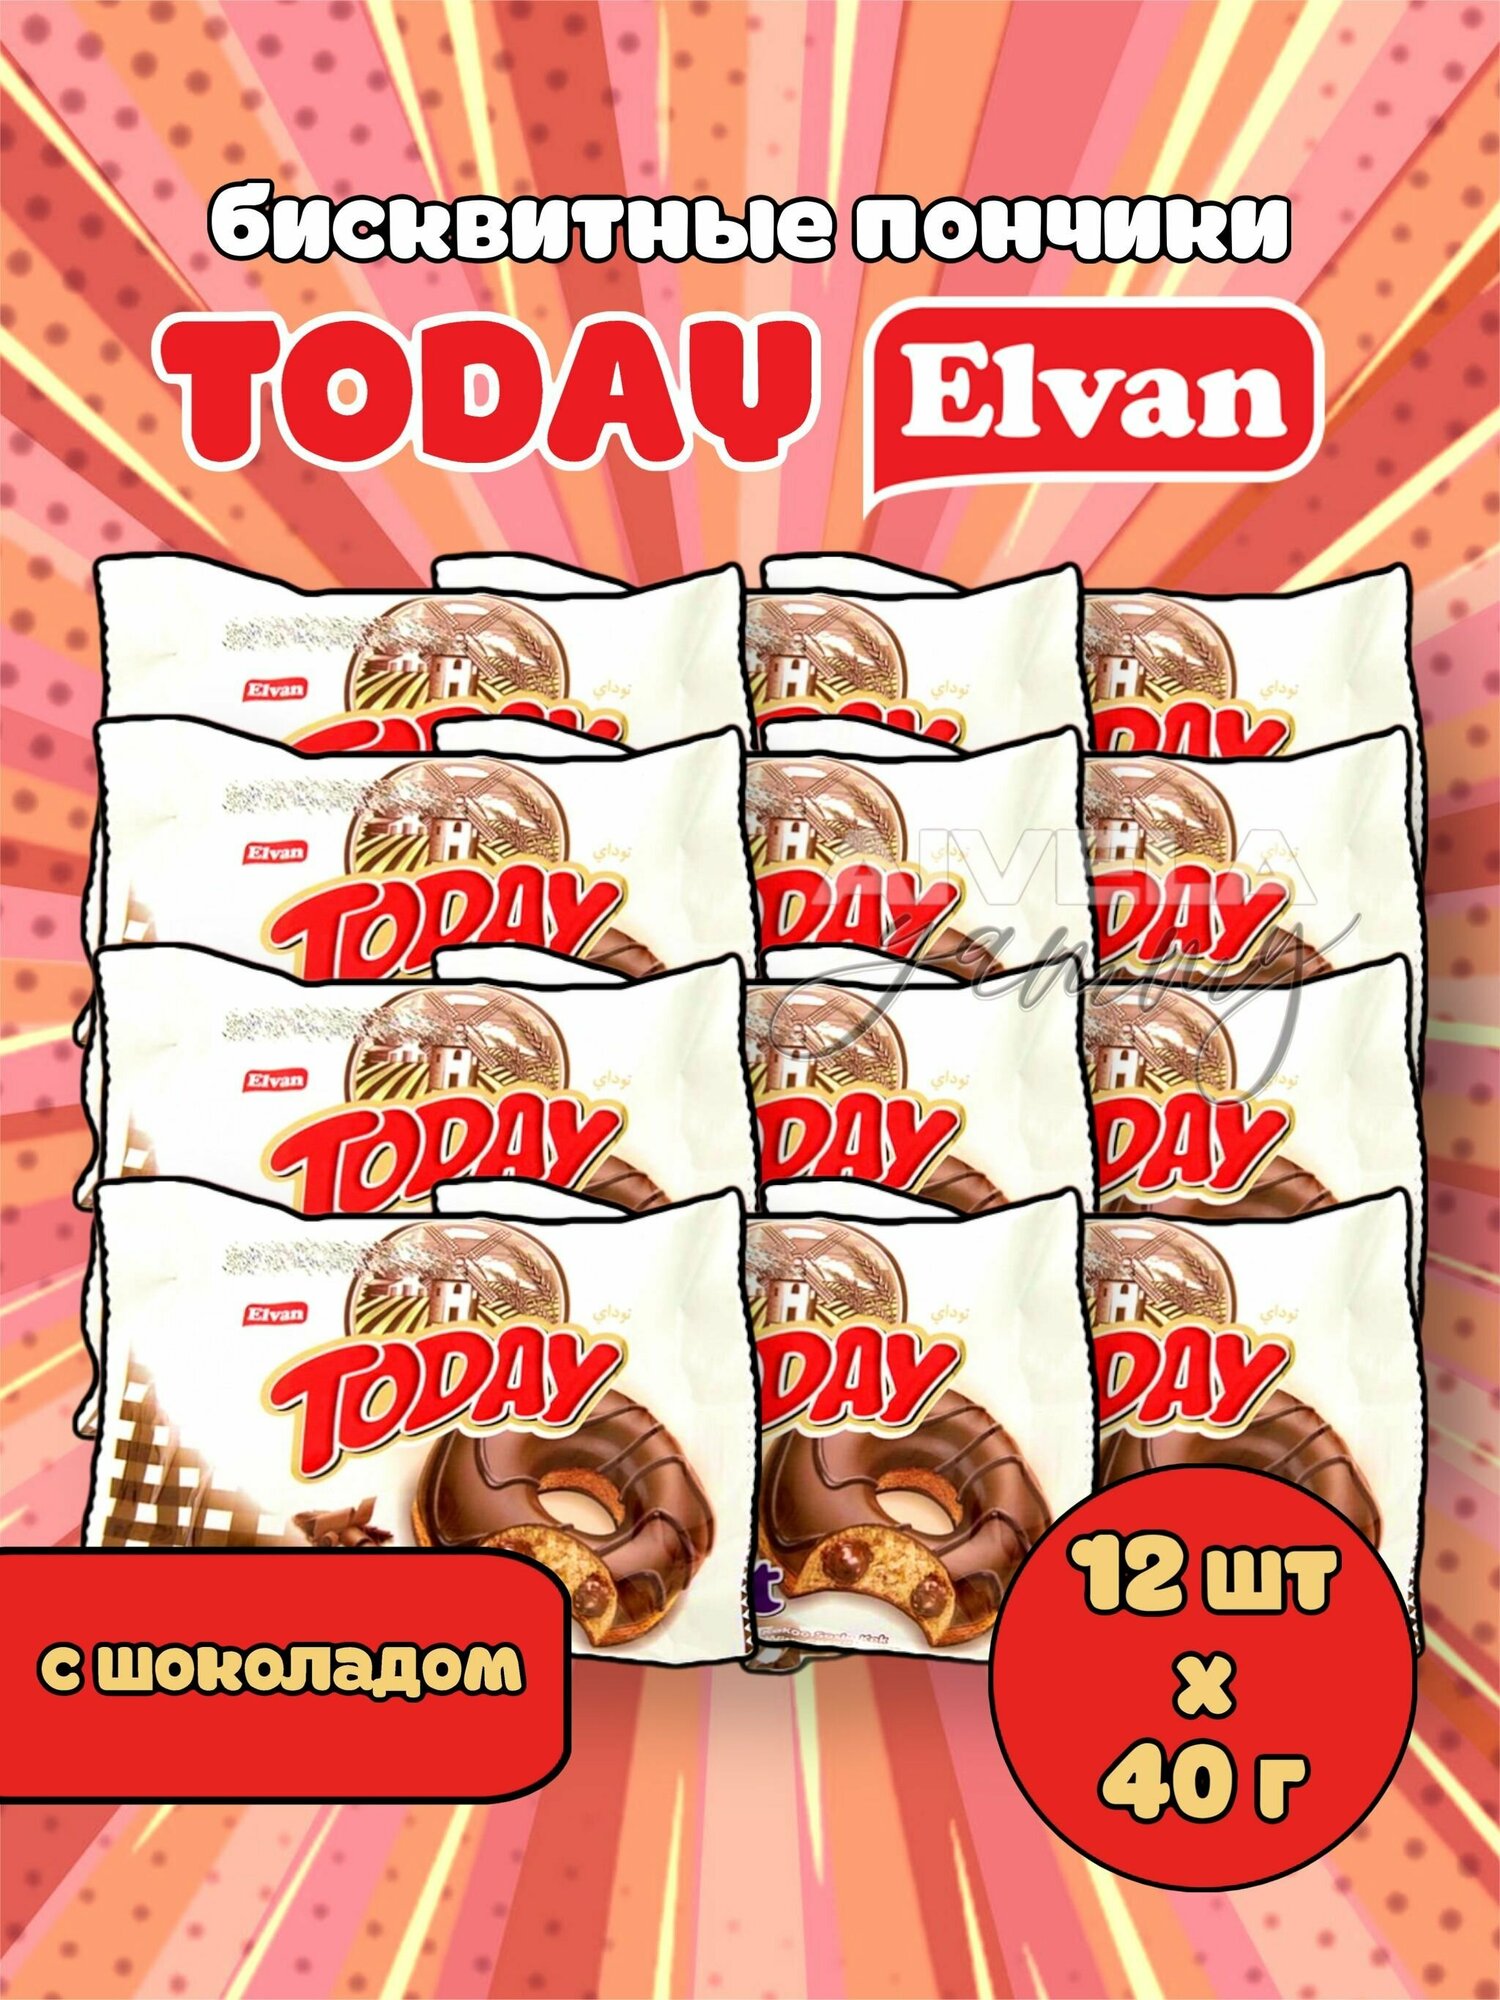 Elvan Today Donut Chocolate/ Тудэй пончик/ Кекс в глазури с шоколадной начинкой кремом 12 шт (Турция)